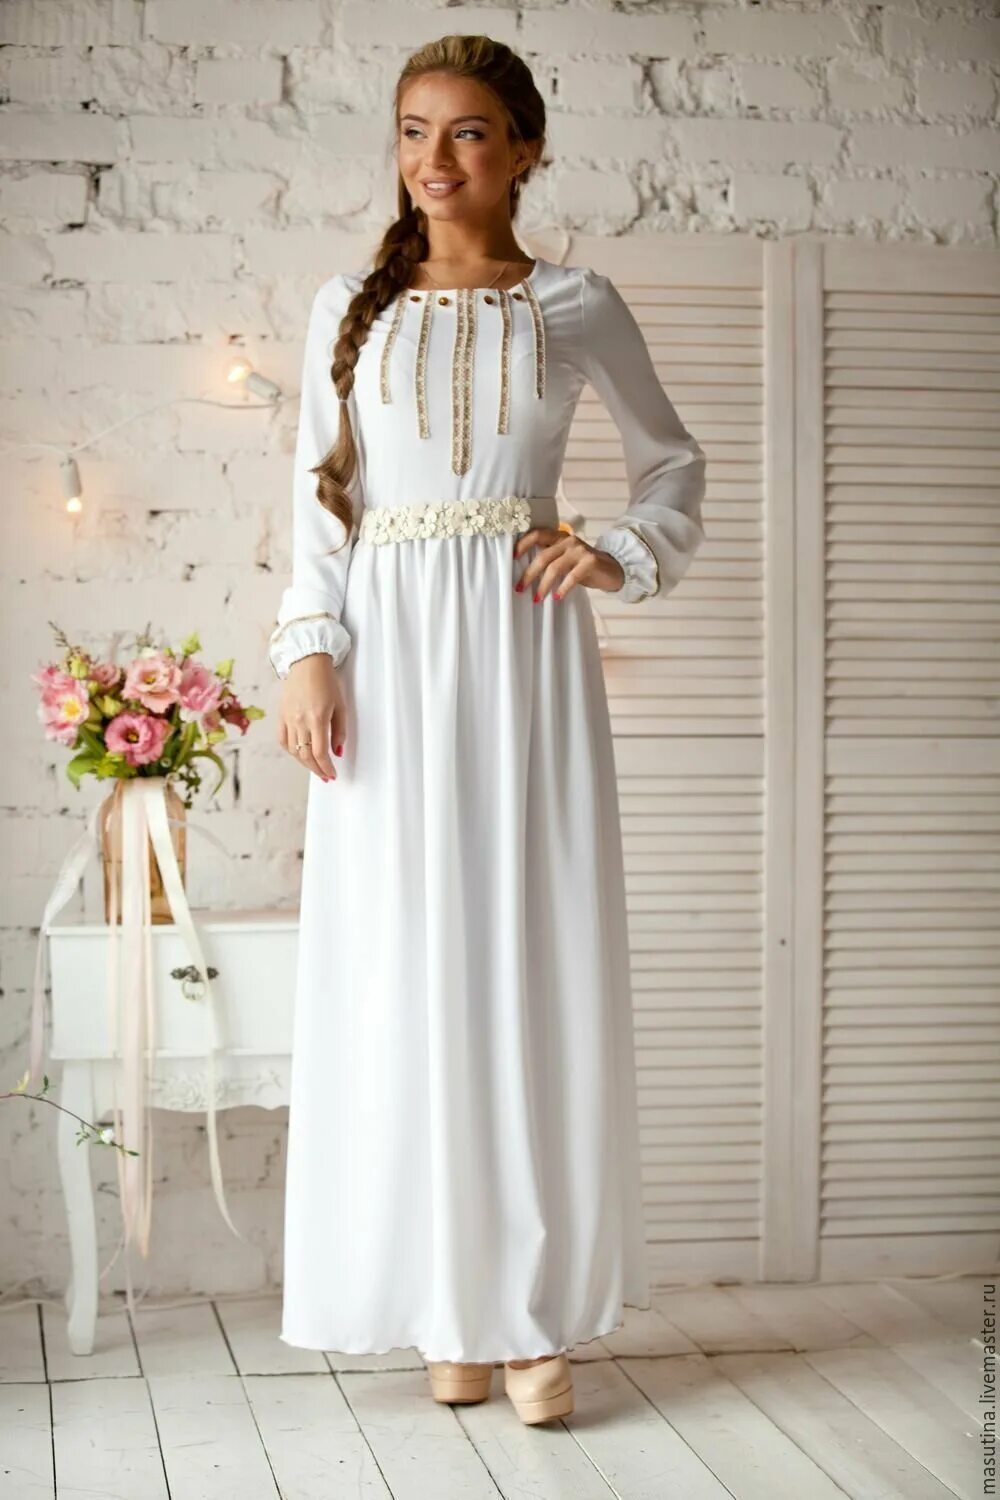 Венчальное платье. Платье в Славянском стиле. Белое длинное платье. Платье для церкви.